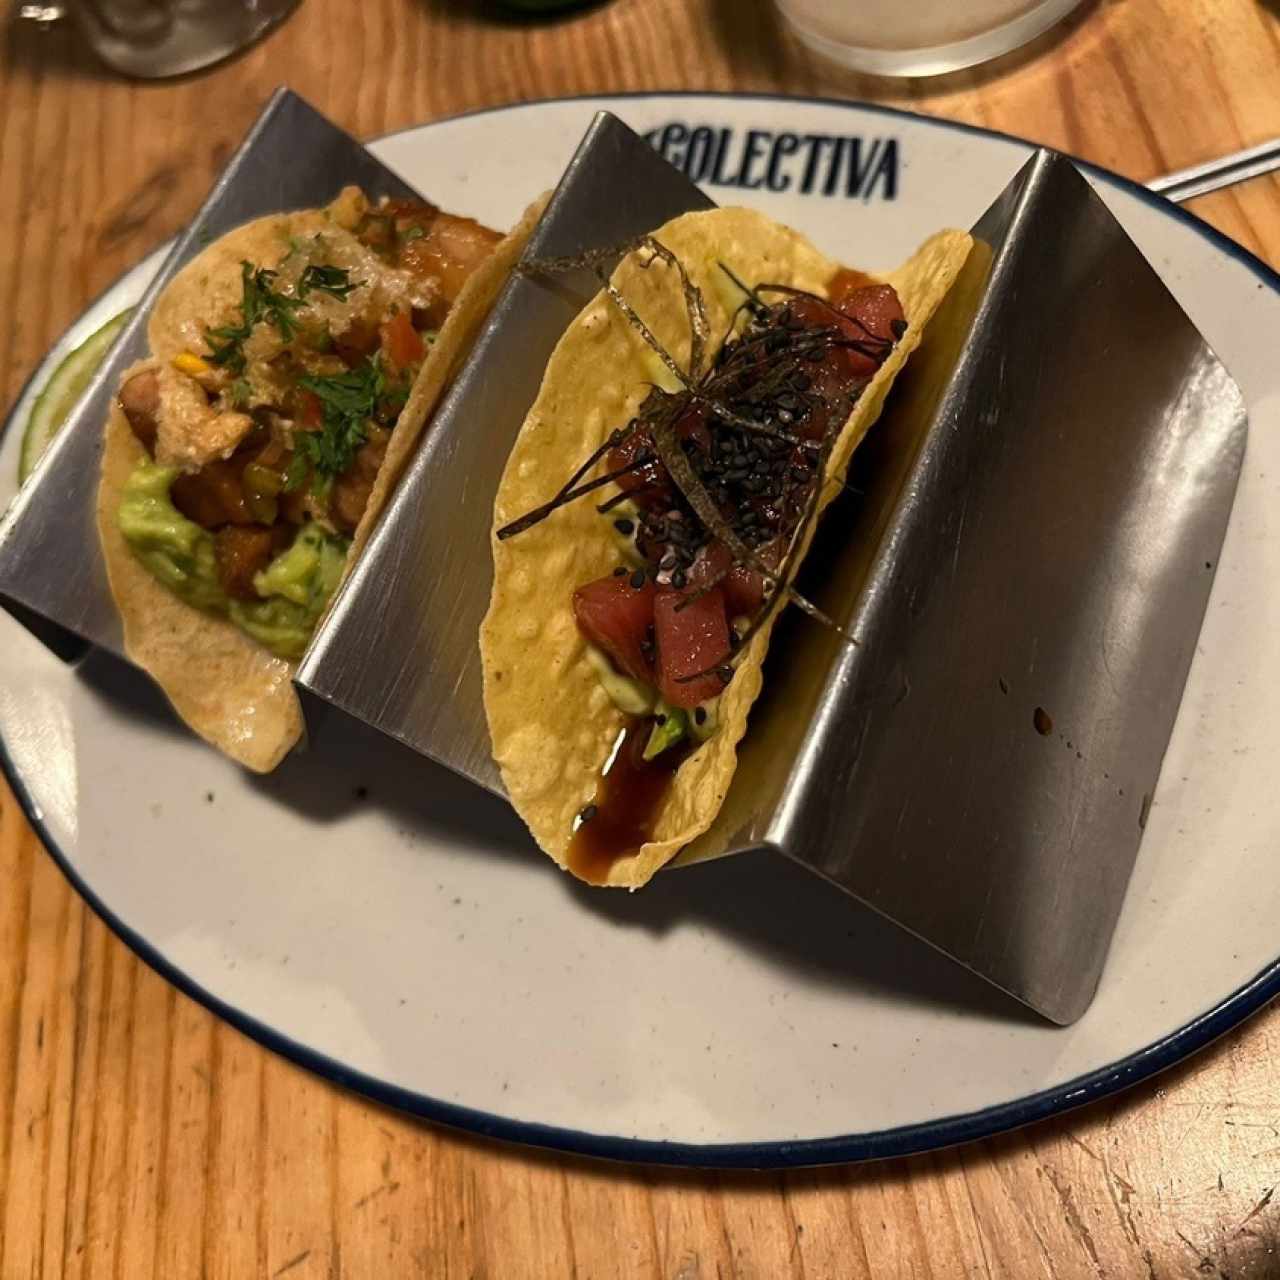 Tacos de chicharrón / tacos de atún